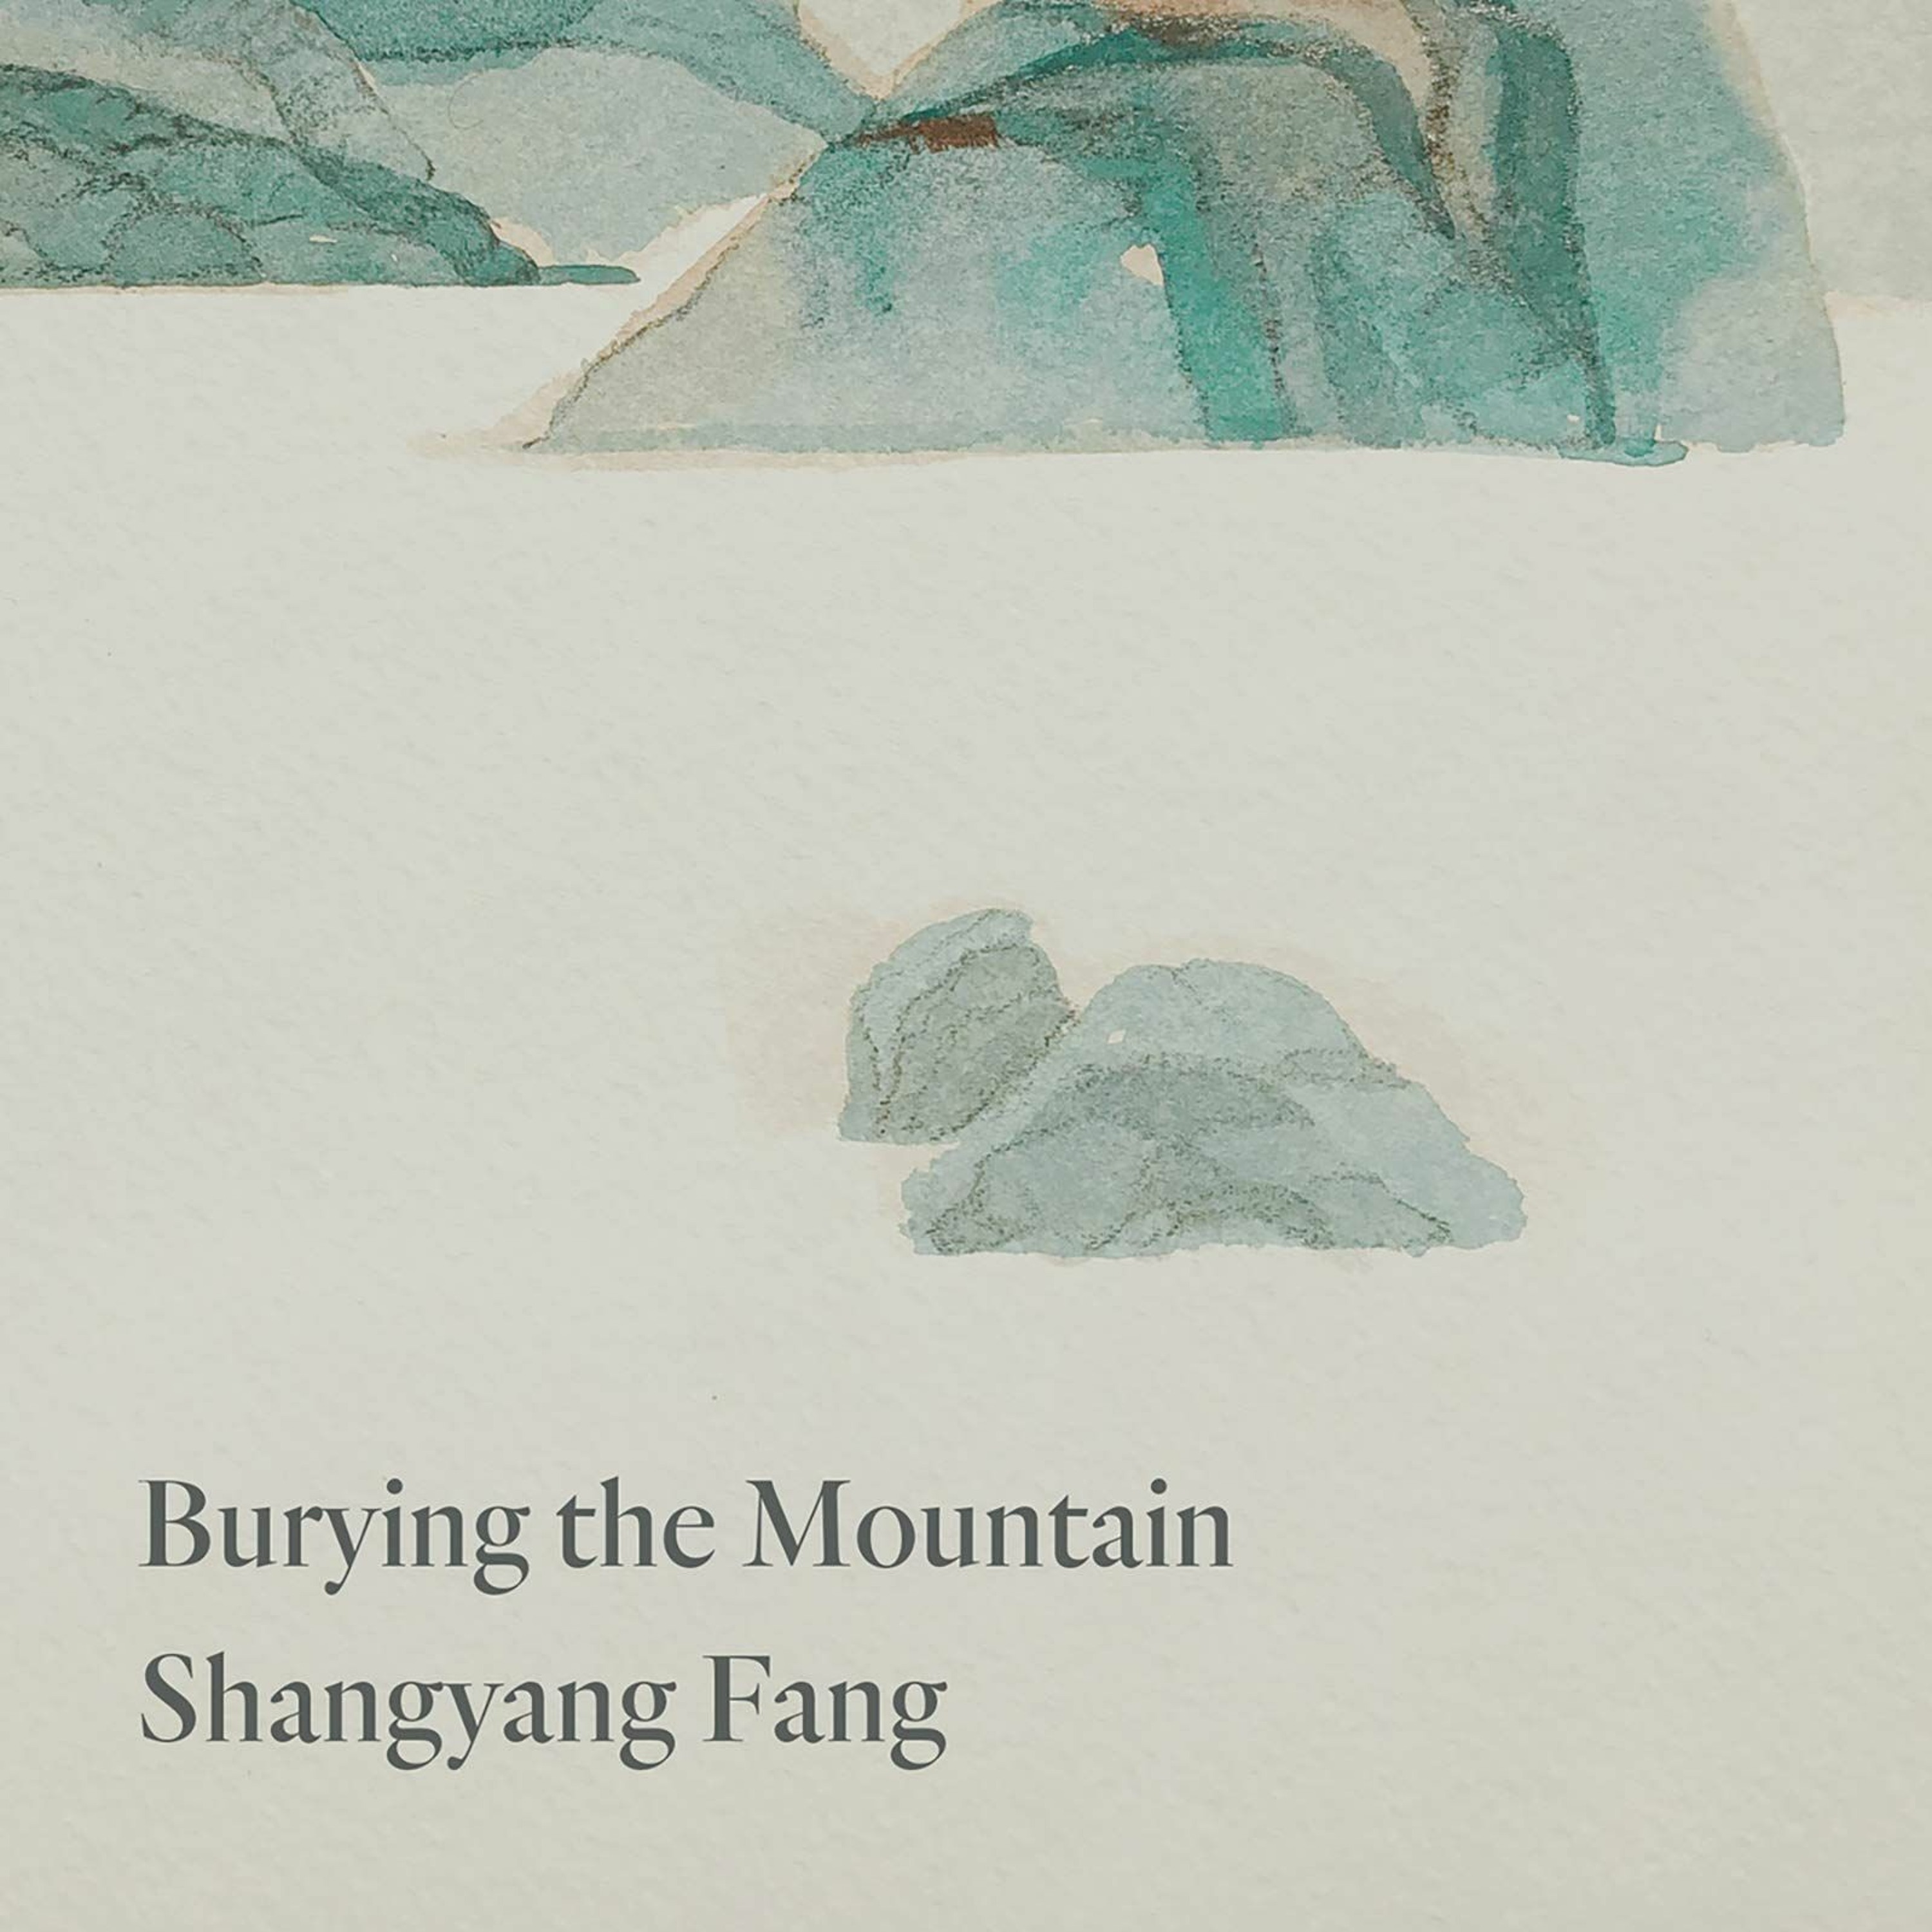 Burying the Mountain by Shangyang Fang